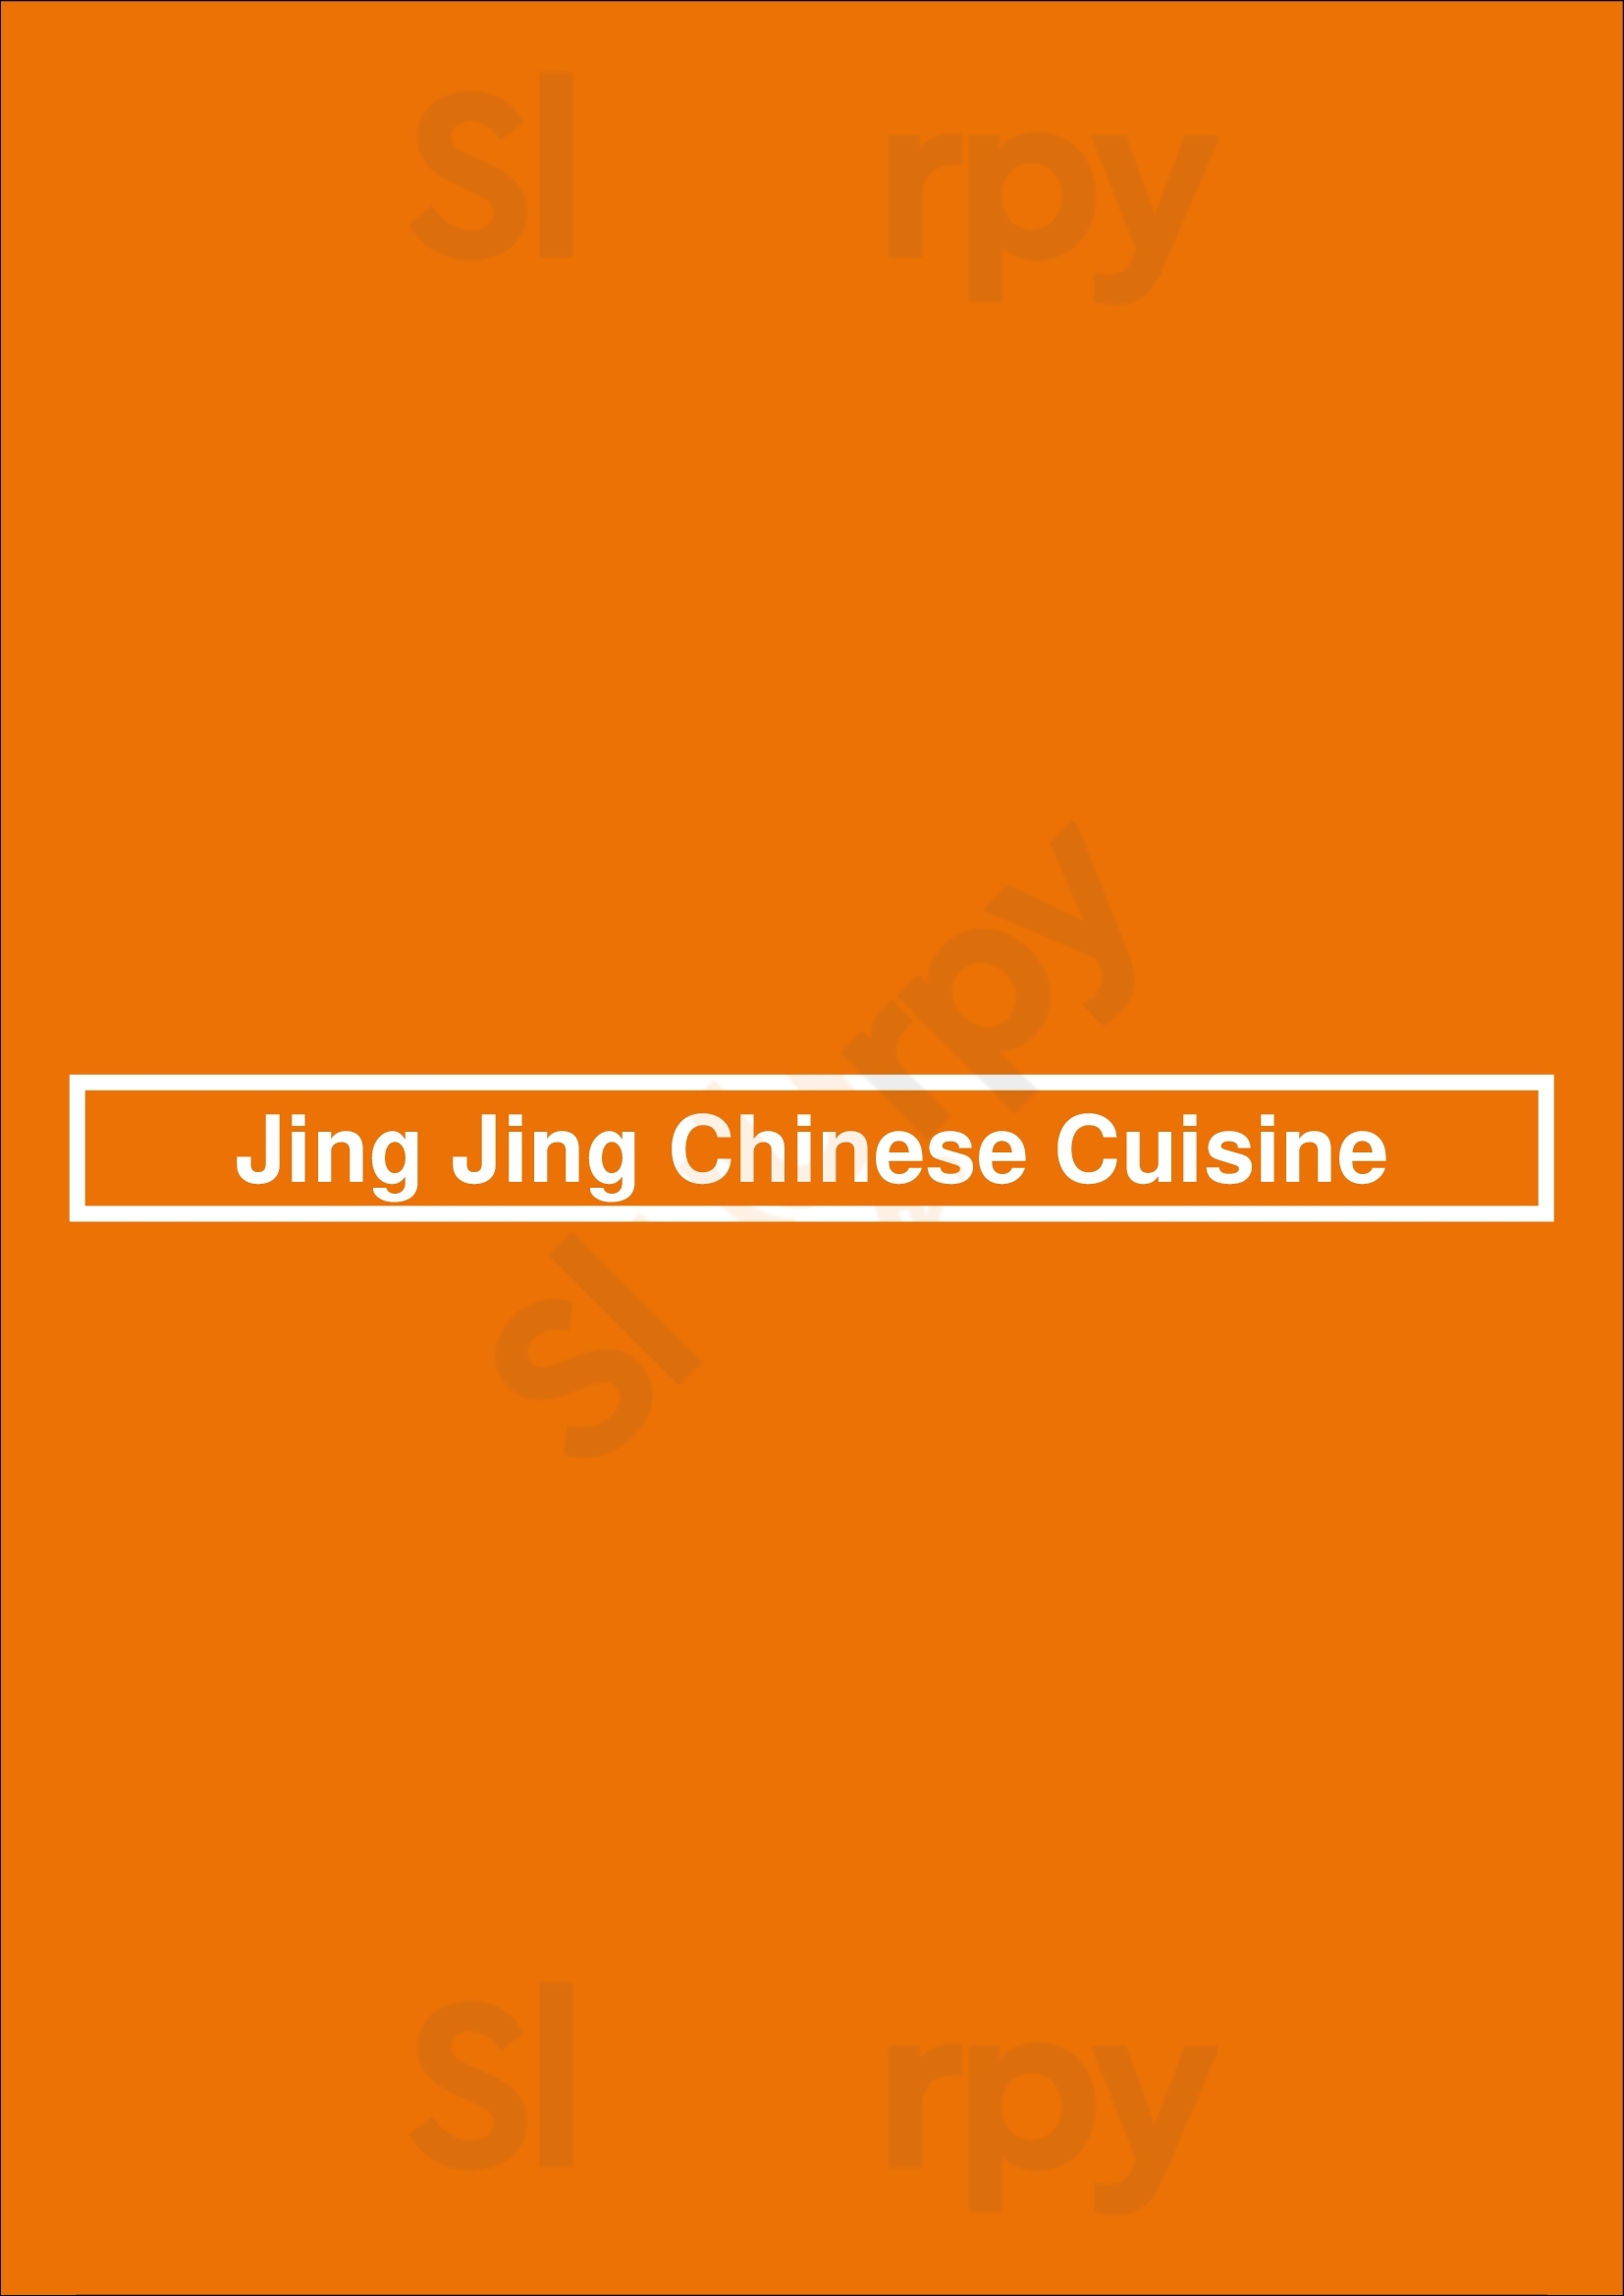 Jing Jing Chinese Cuisine Rocklin Menu - 1